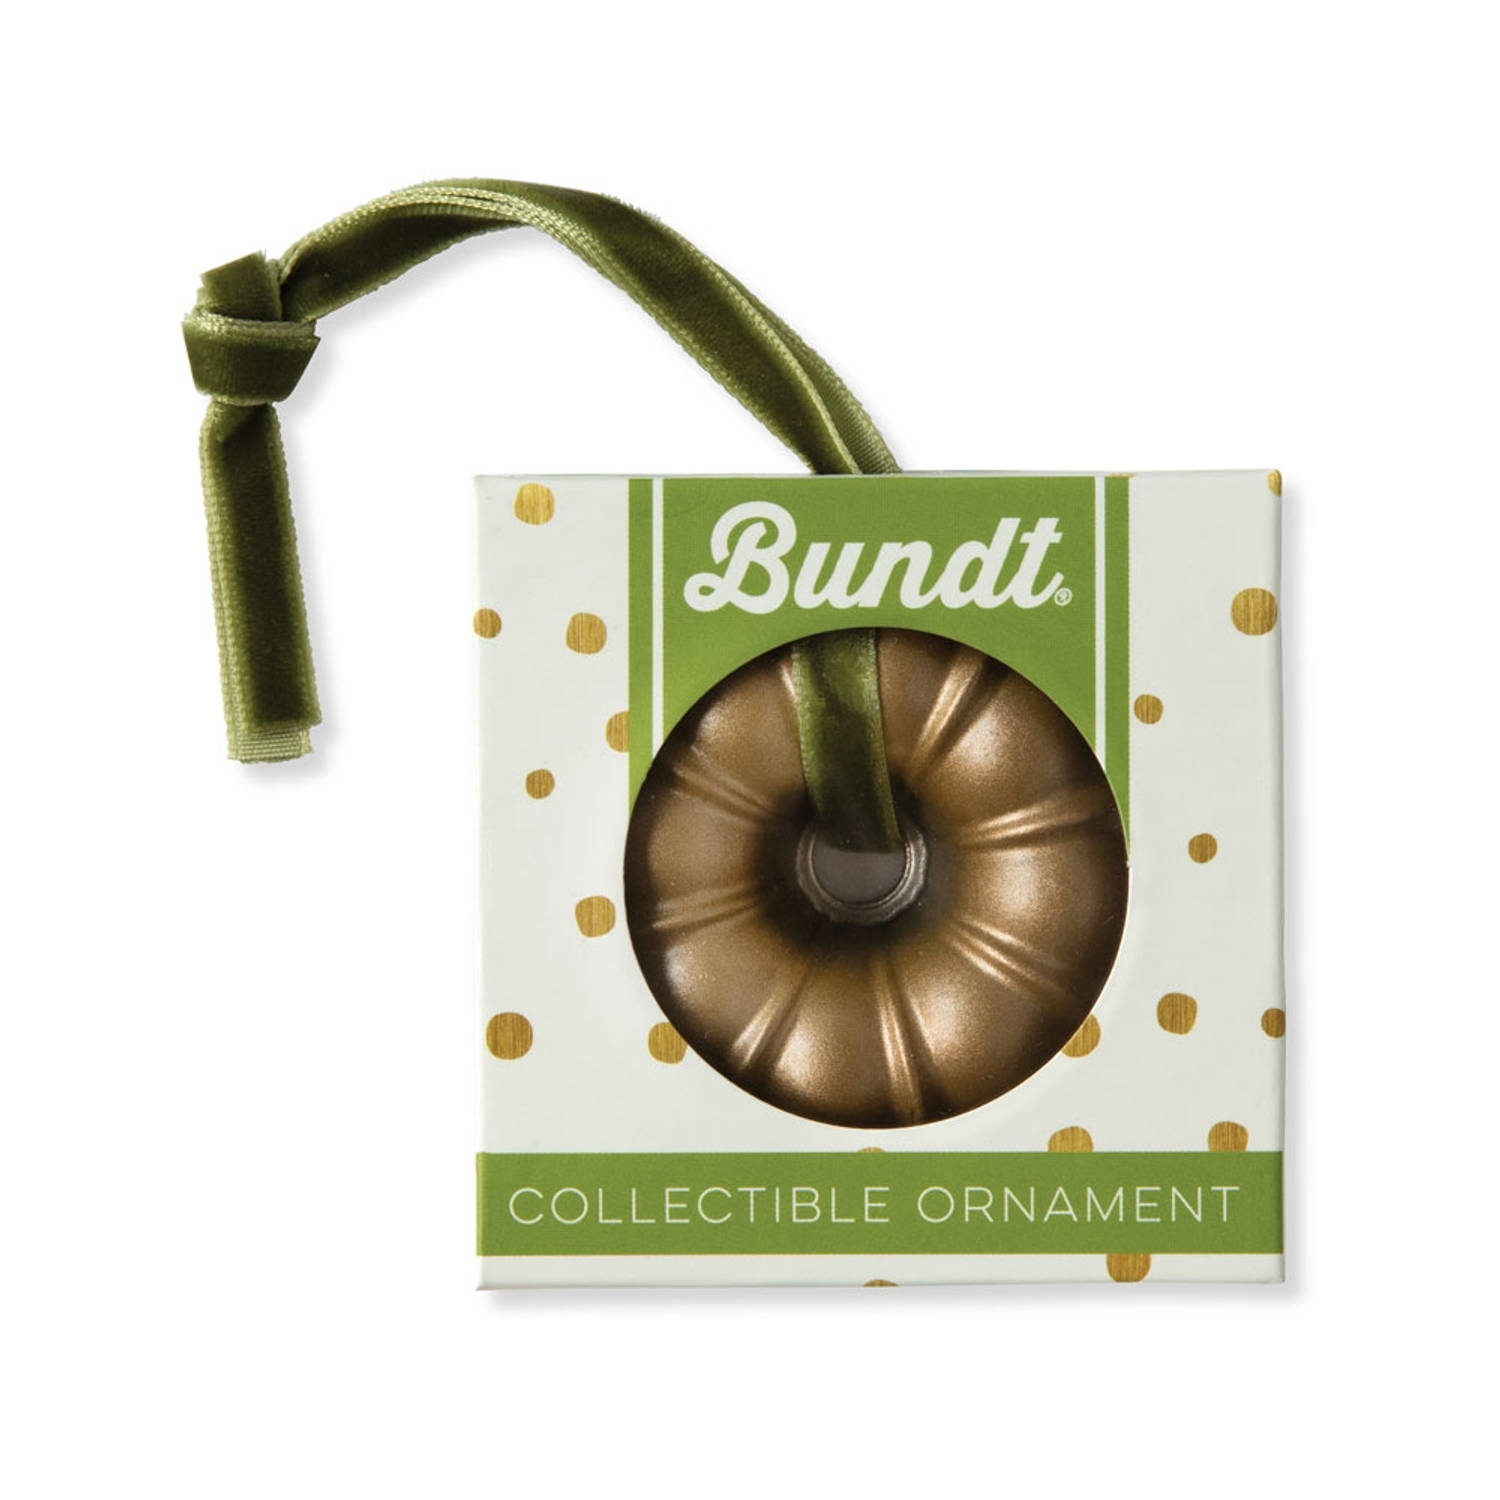 Nordic Ware - Kerstbal Bundt Goud - Anniversary Ornament - Nordic Ware